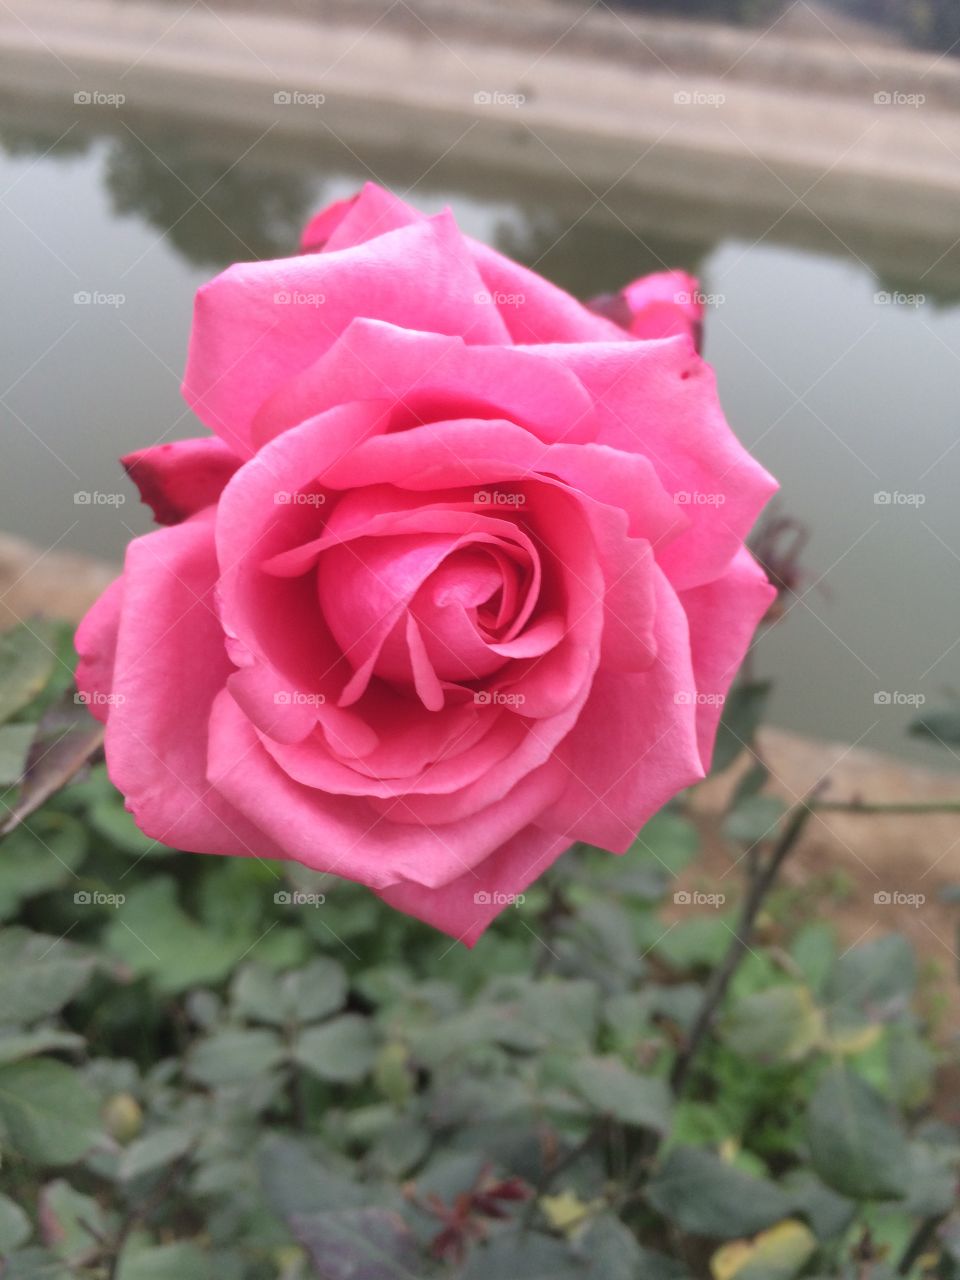 Rose
